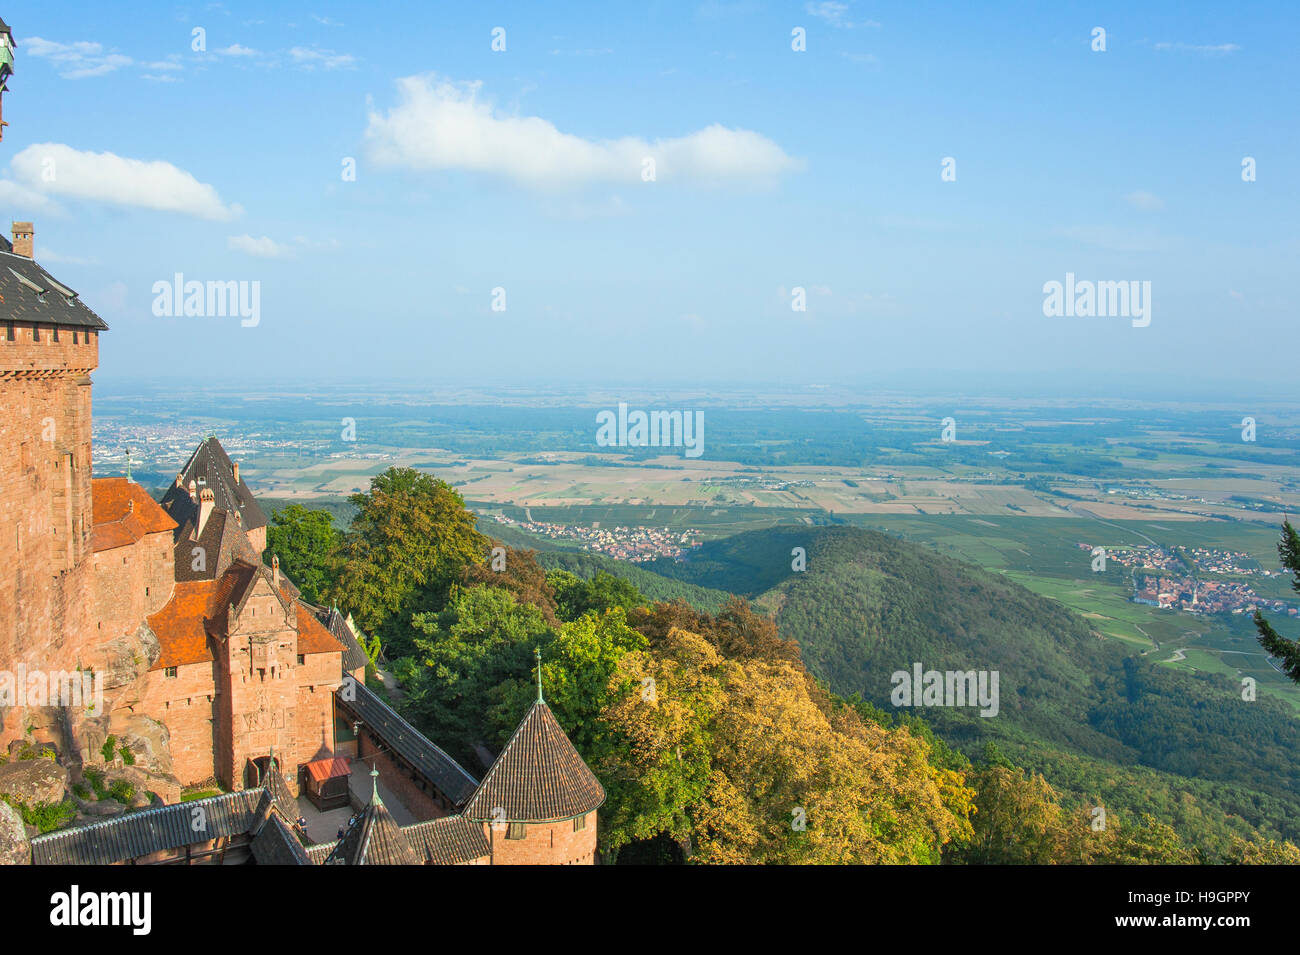 Château Haut-Koenigsburg avec vue panoramique, château du Moyen Âge, reconstruit à l'architecture romantique, Alsace, France Banque D'Images